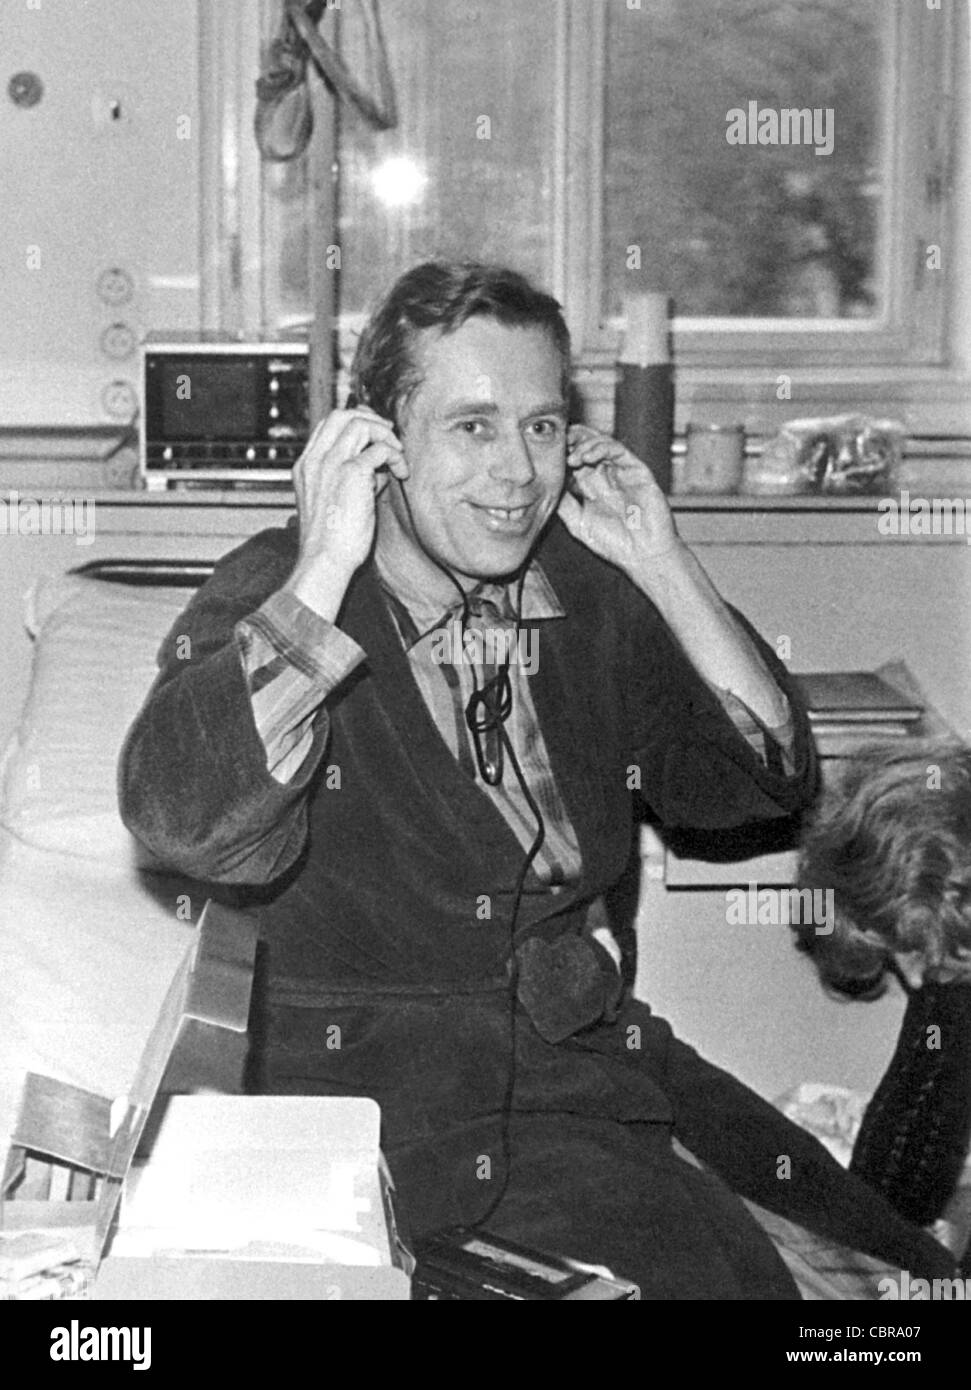 ARCHIVFOTO von 1983 *** Tschechische Dissident und Schriftsteller Václav Havel hört ein Tonbandgerät in Prag Krankenhaus Pod Stockfoto